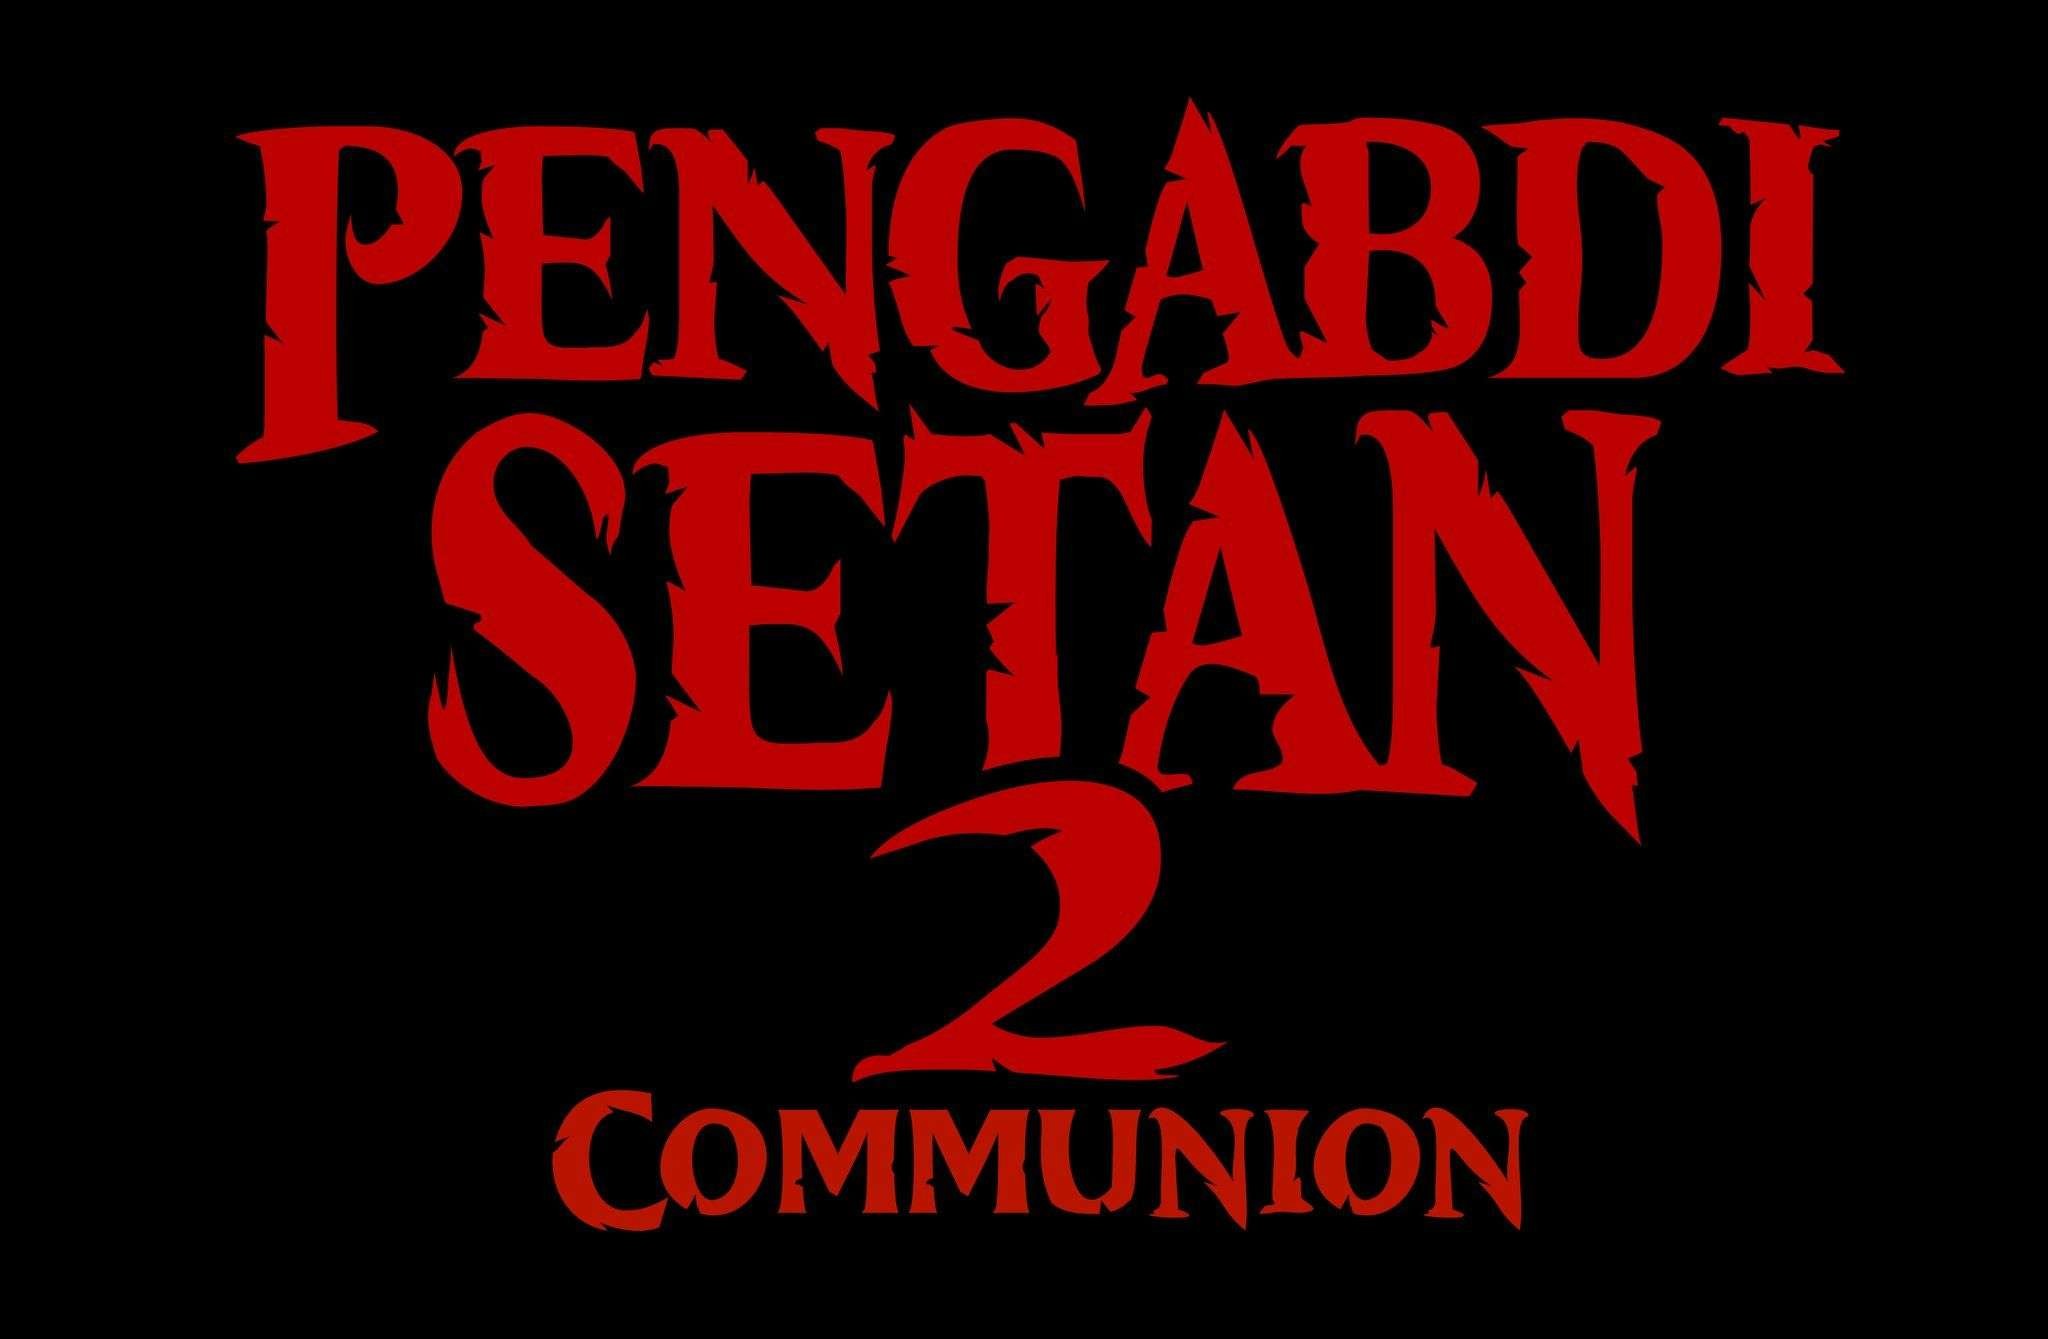 Sutradara Joko Anwar mempromosikan film Pengabdi Setan 2. (Foto: Instagram)